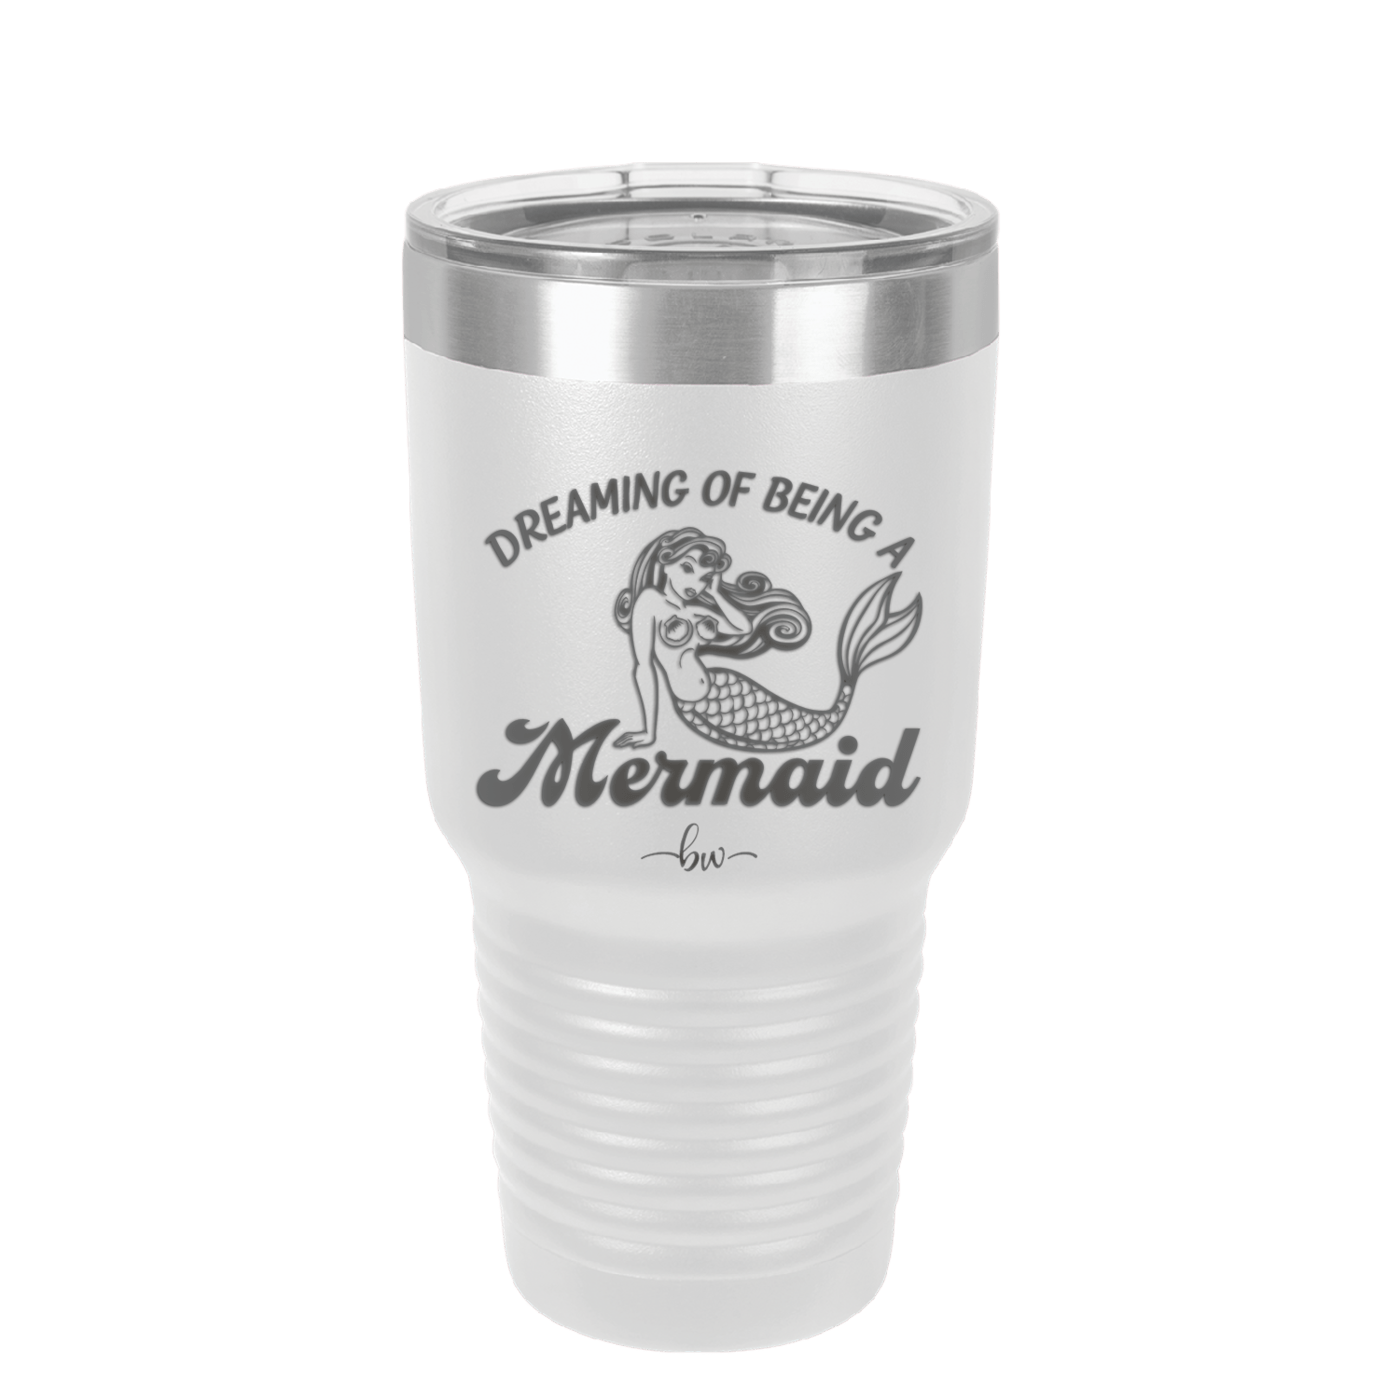 Dreaming of Being a Mermaid 1 - Laser Engraved Stainless Steel Drinkware - 1469 -